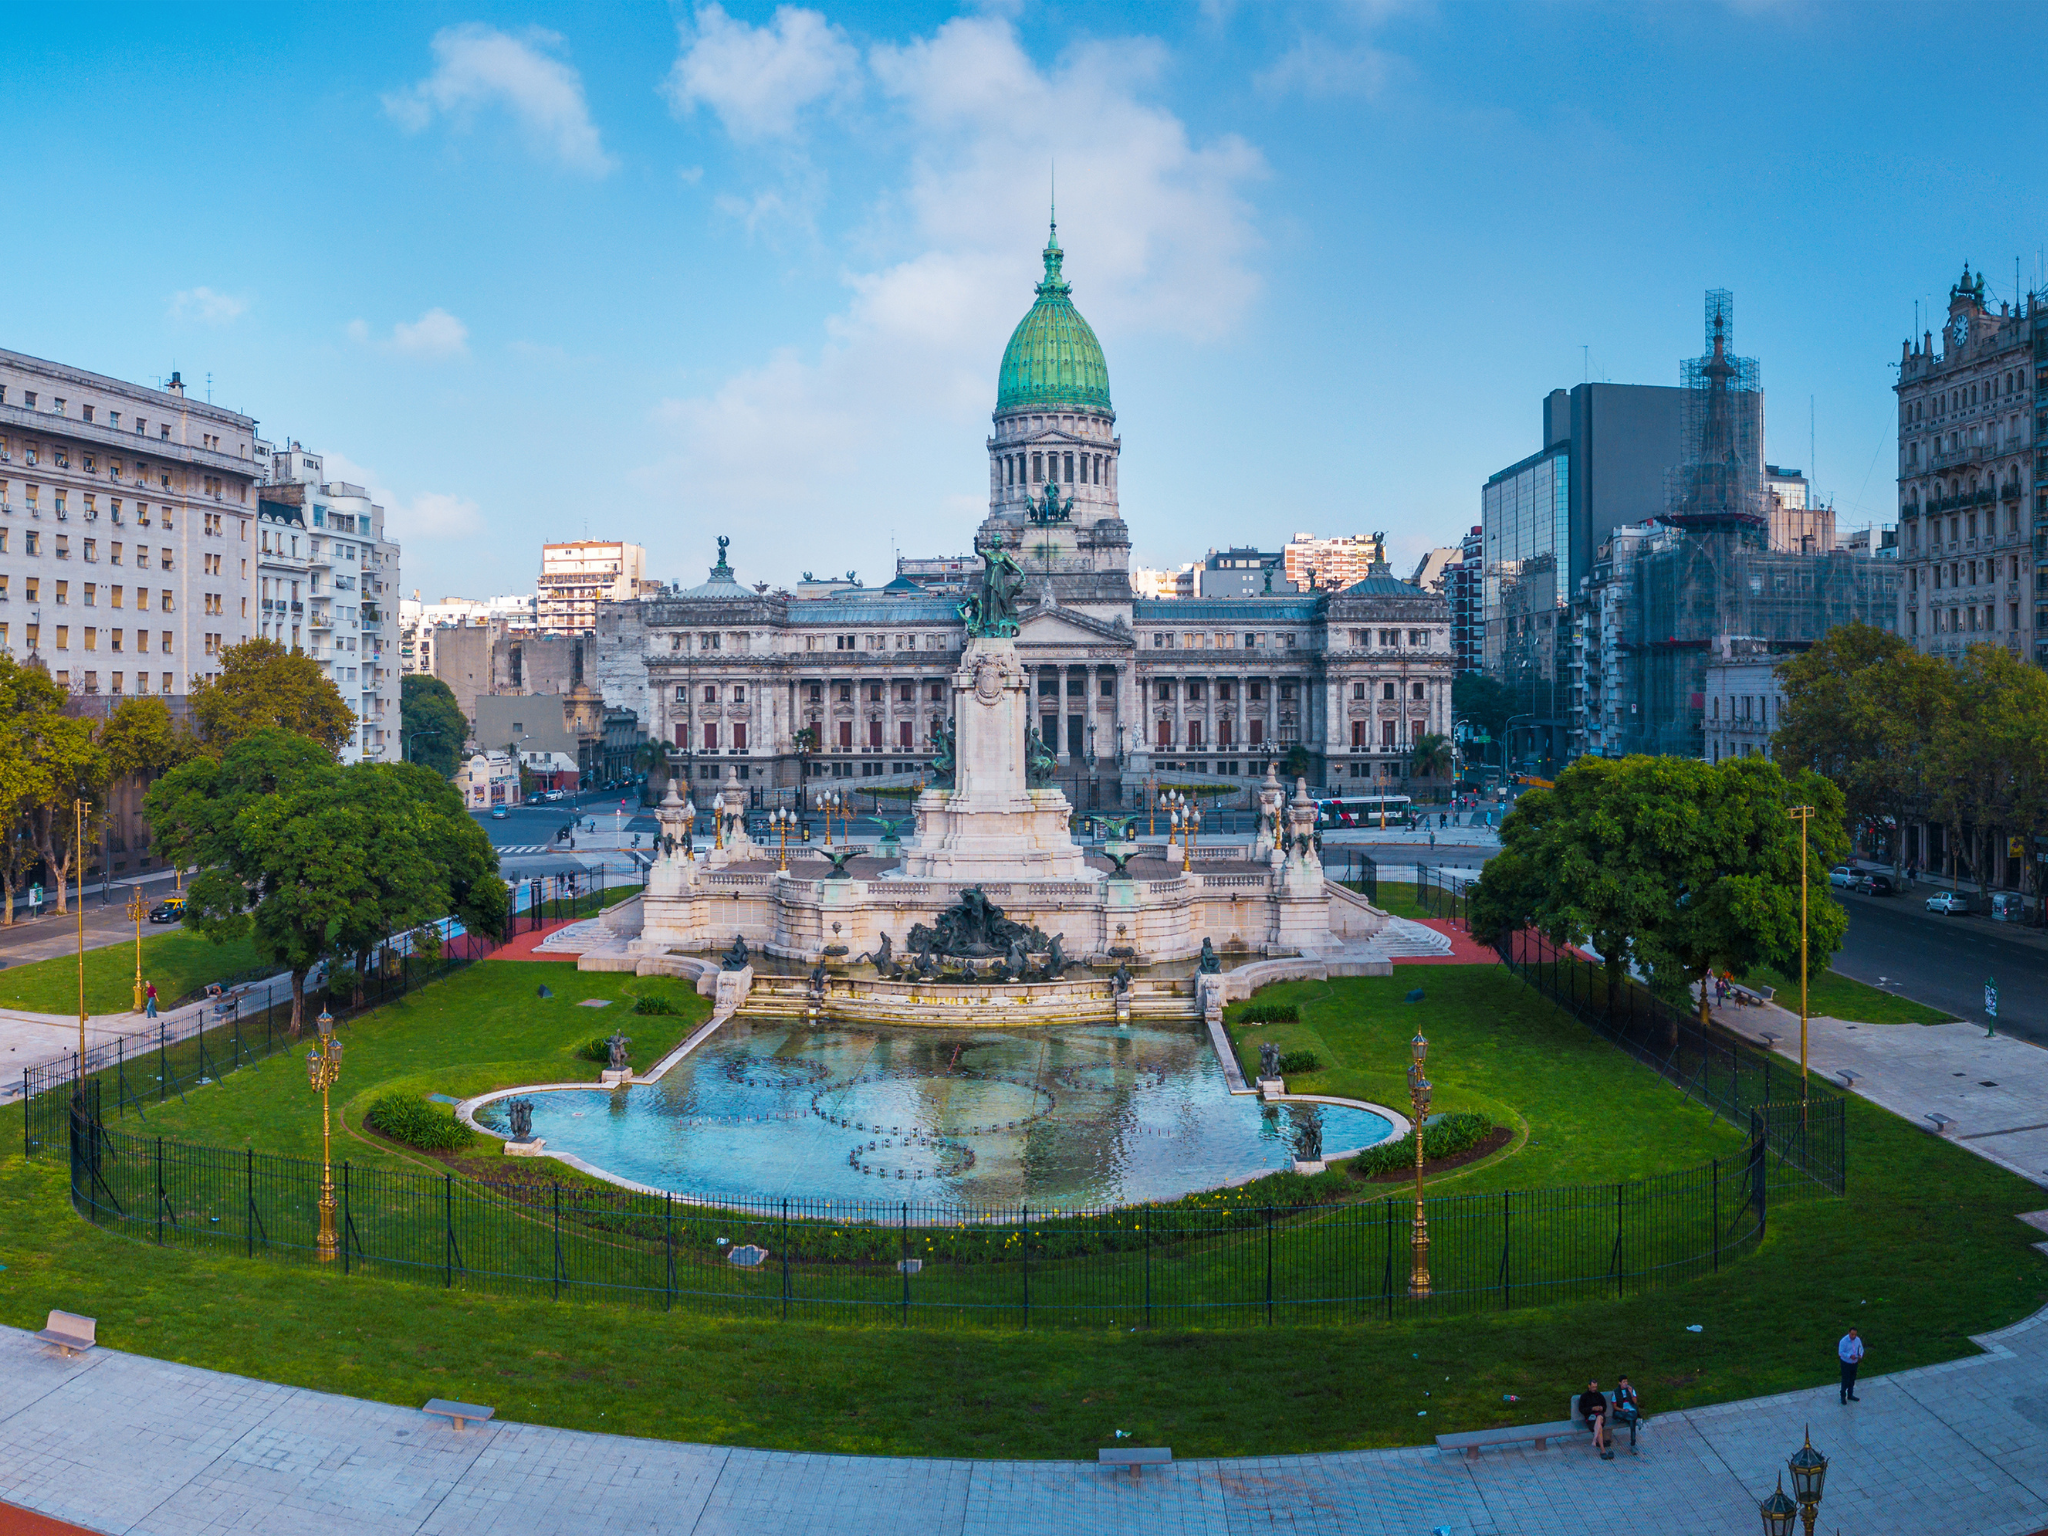 Buenos Aires - Plaza del Congreso